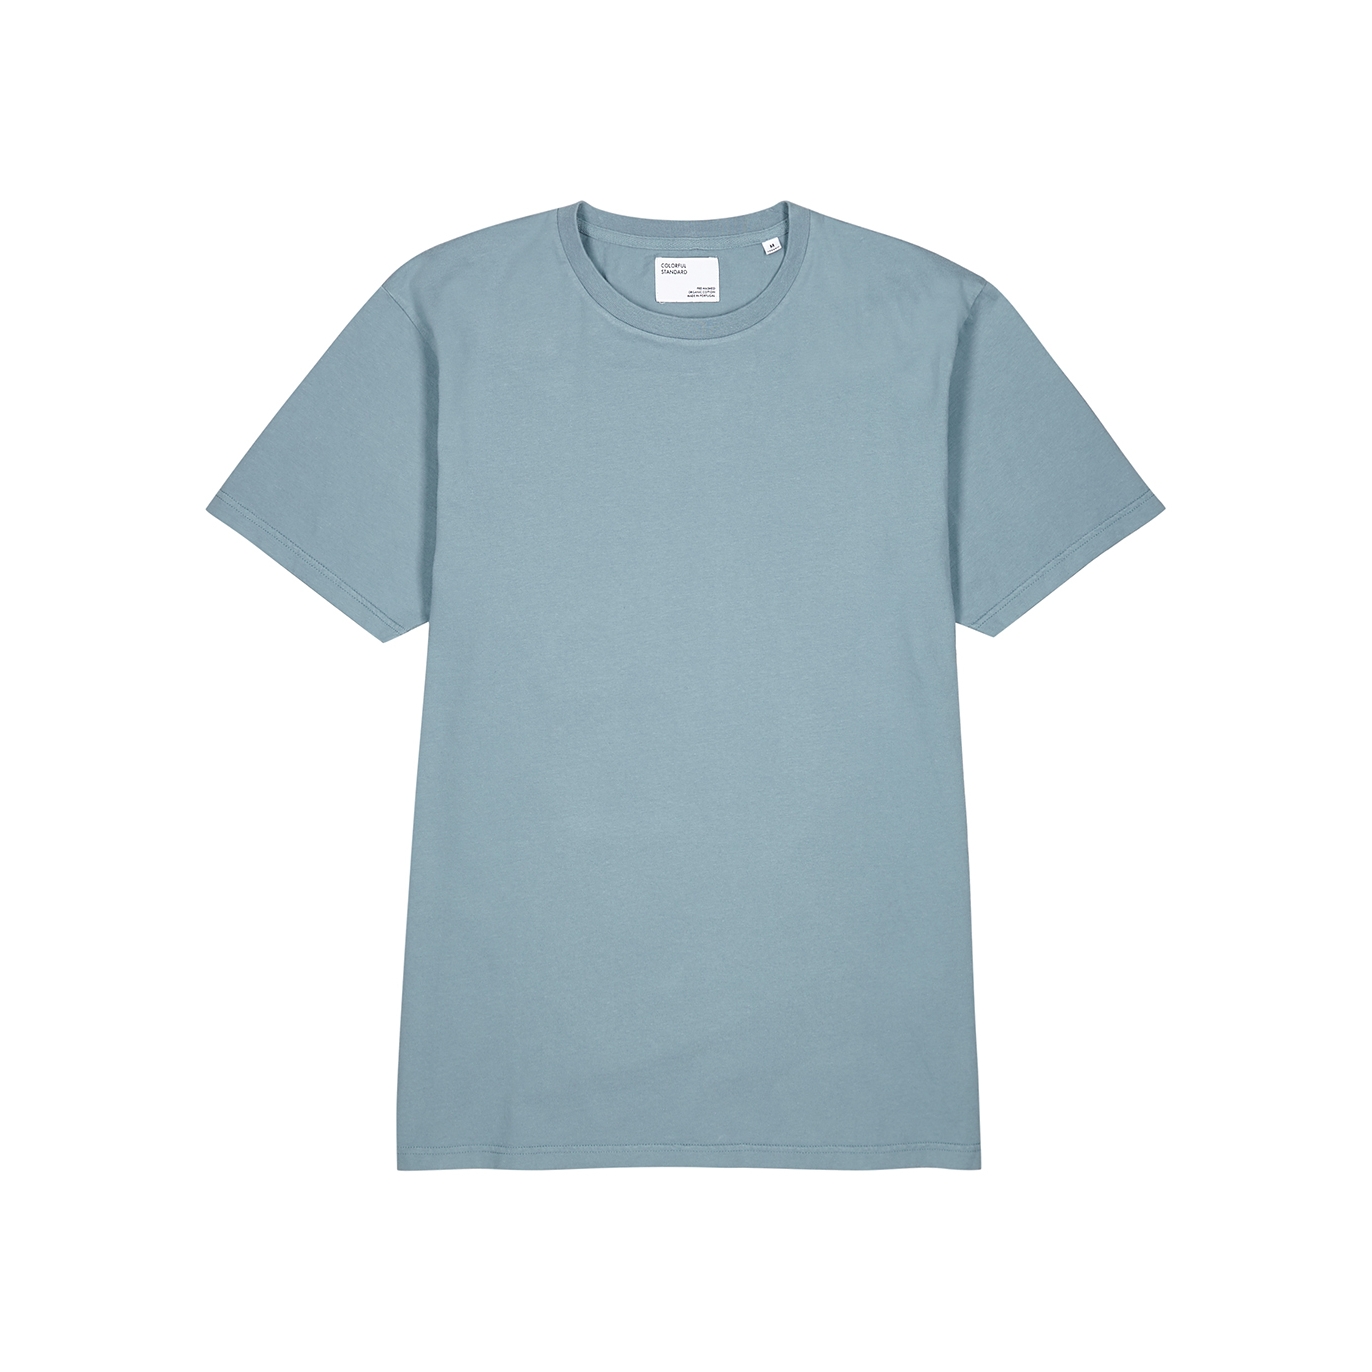 Colorful Standard Blue Cotton T-shirt